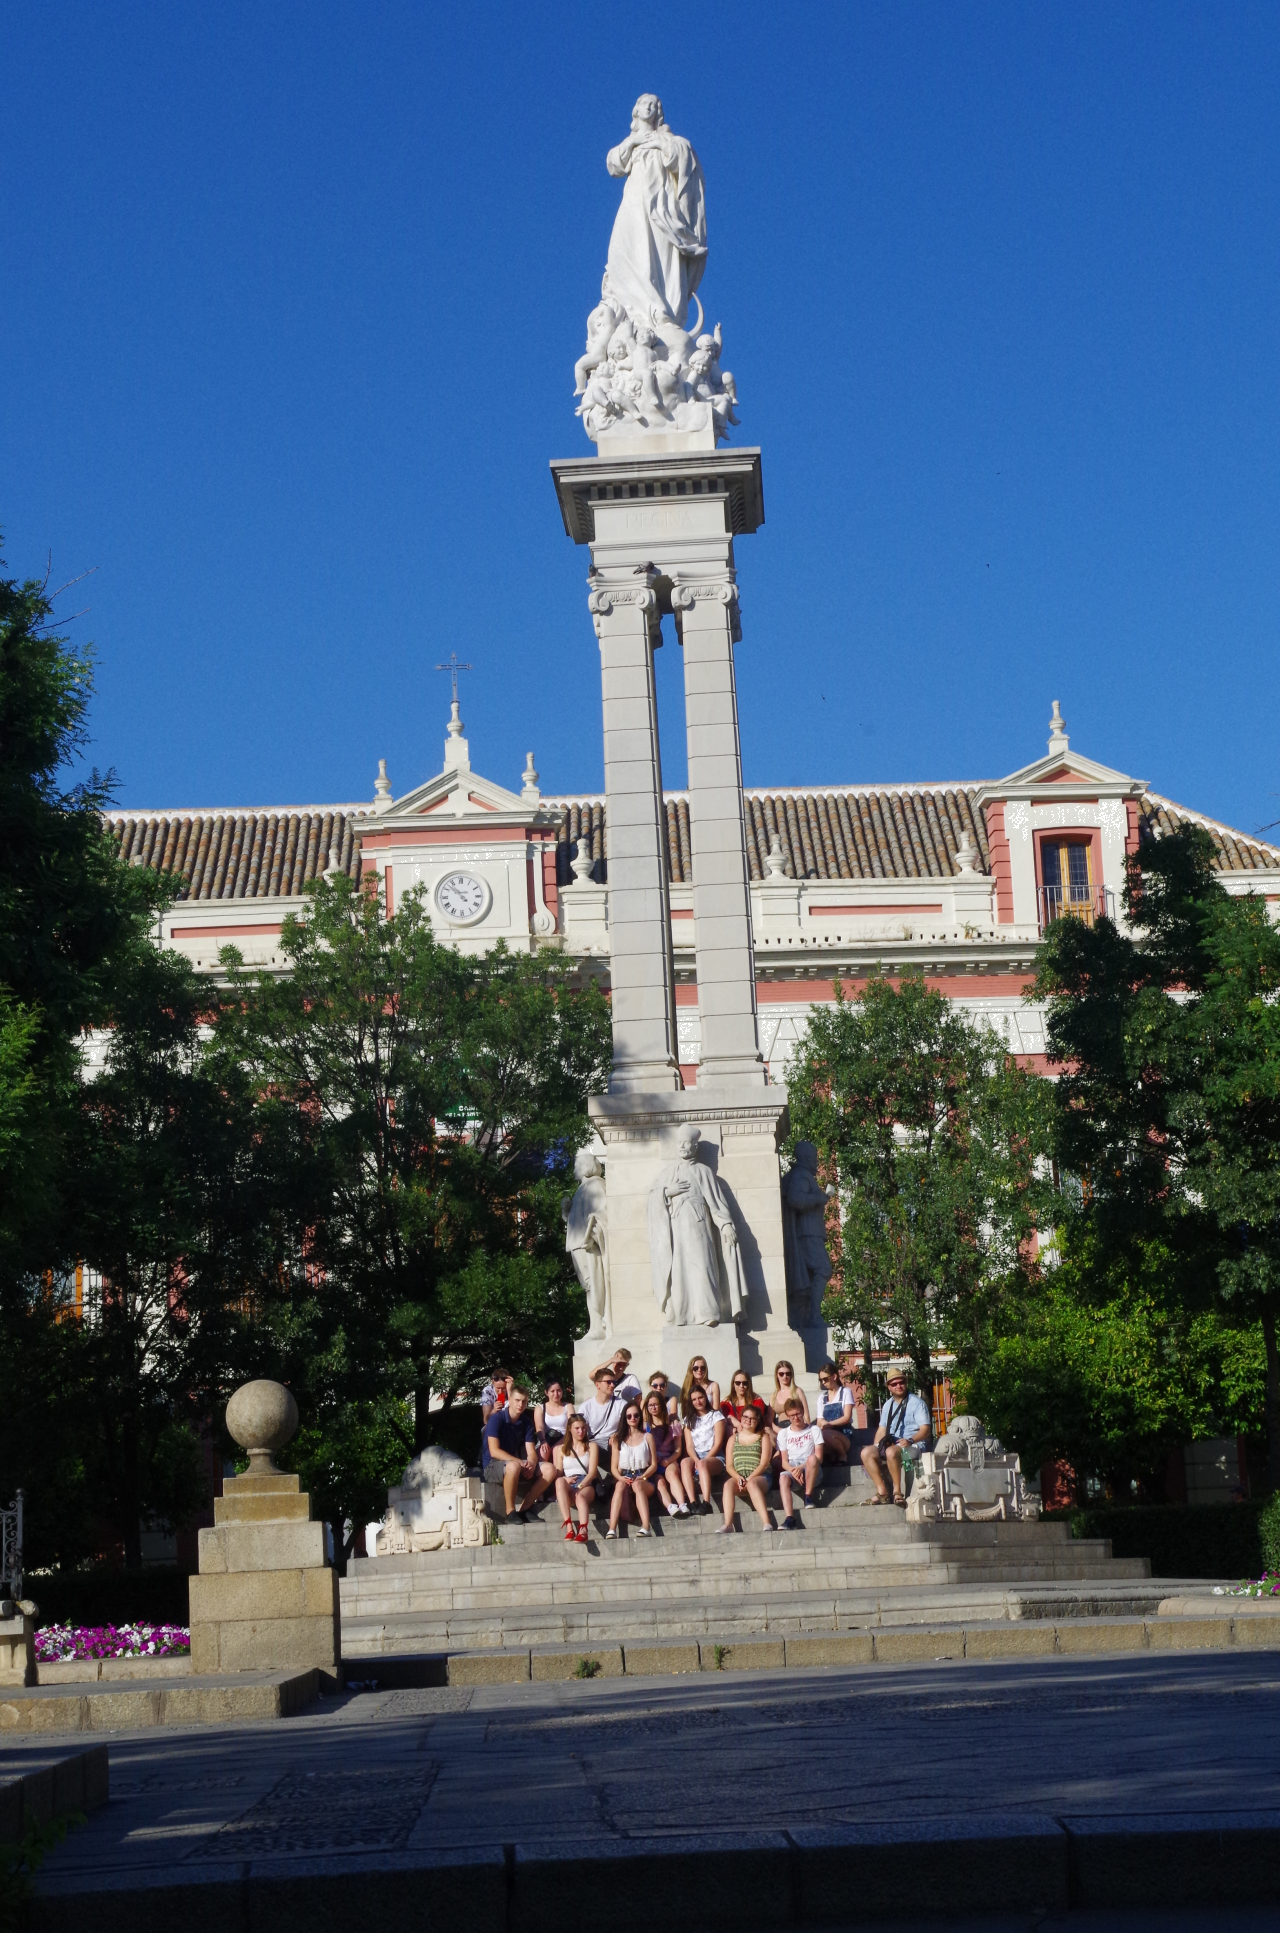 Uczniowie pod pomnikiem na Plaze del Triunfo w Sevilli